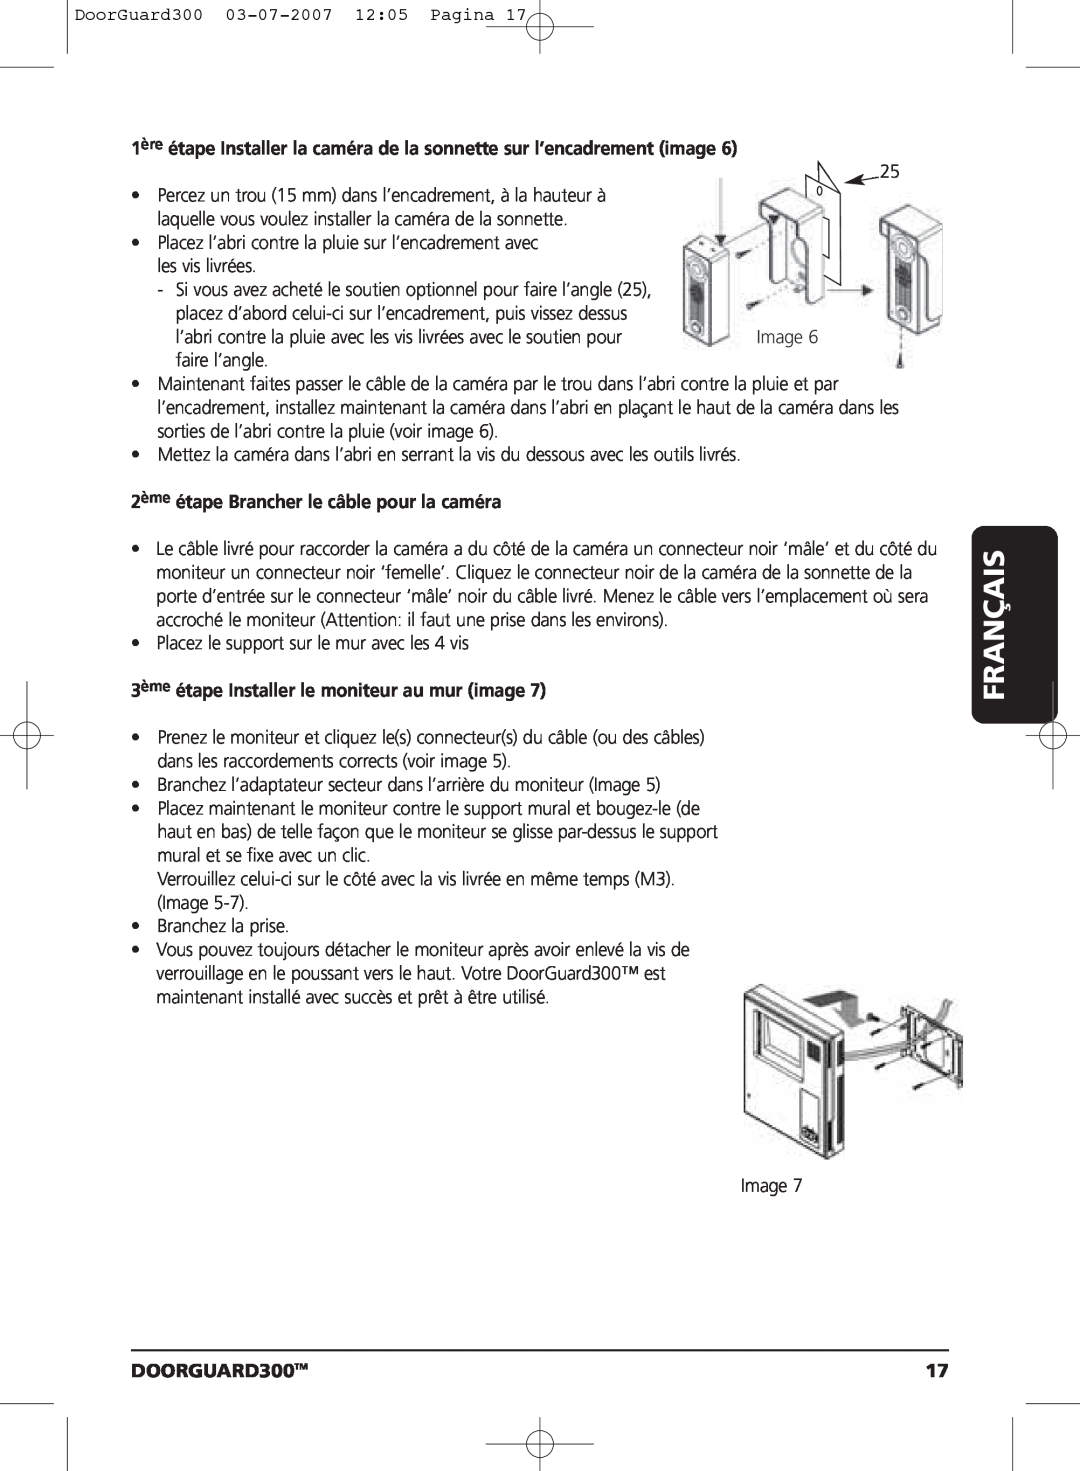 Marmitek DOORGUARD300TM user manual 1ère étape Installer la caméra de la sonnette sur l’encadrement image, Français 